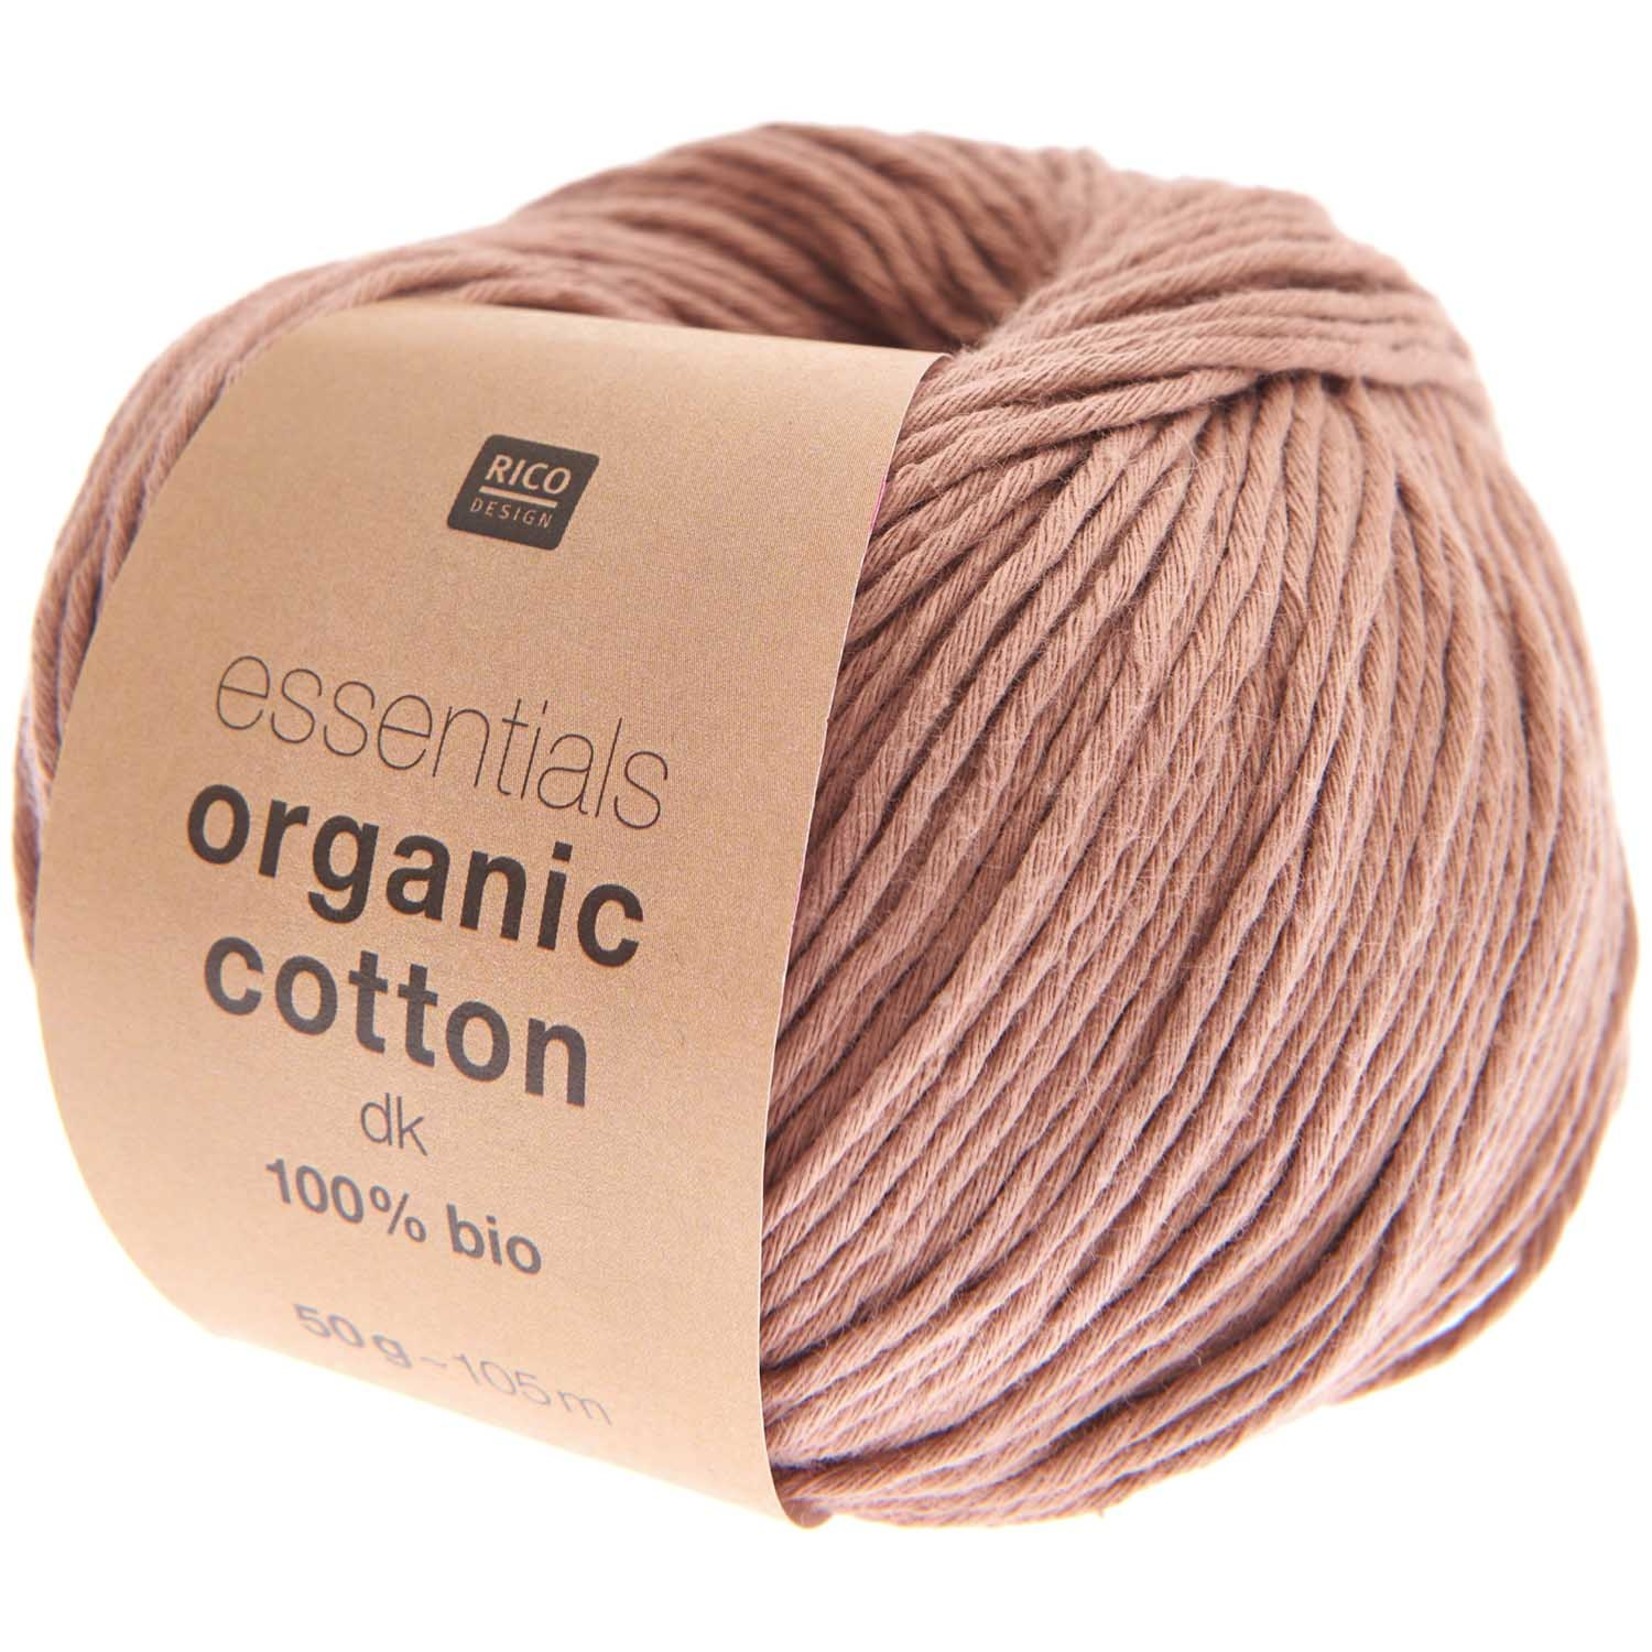 Rico Organic Cotton dk 13 Nougat